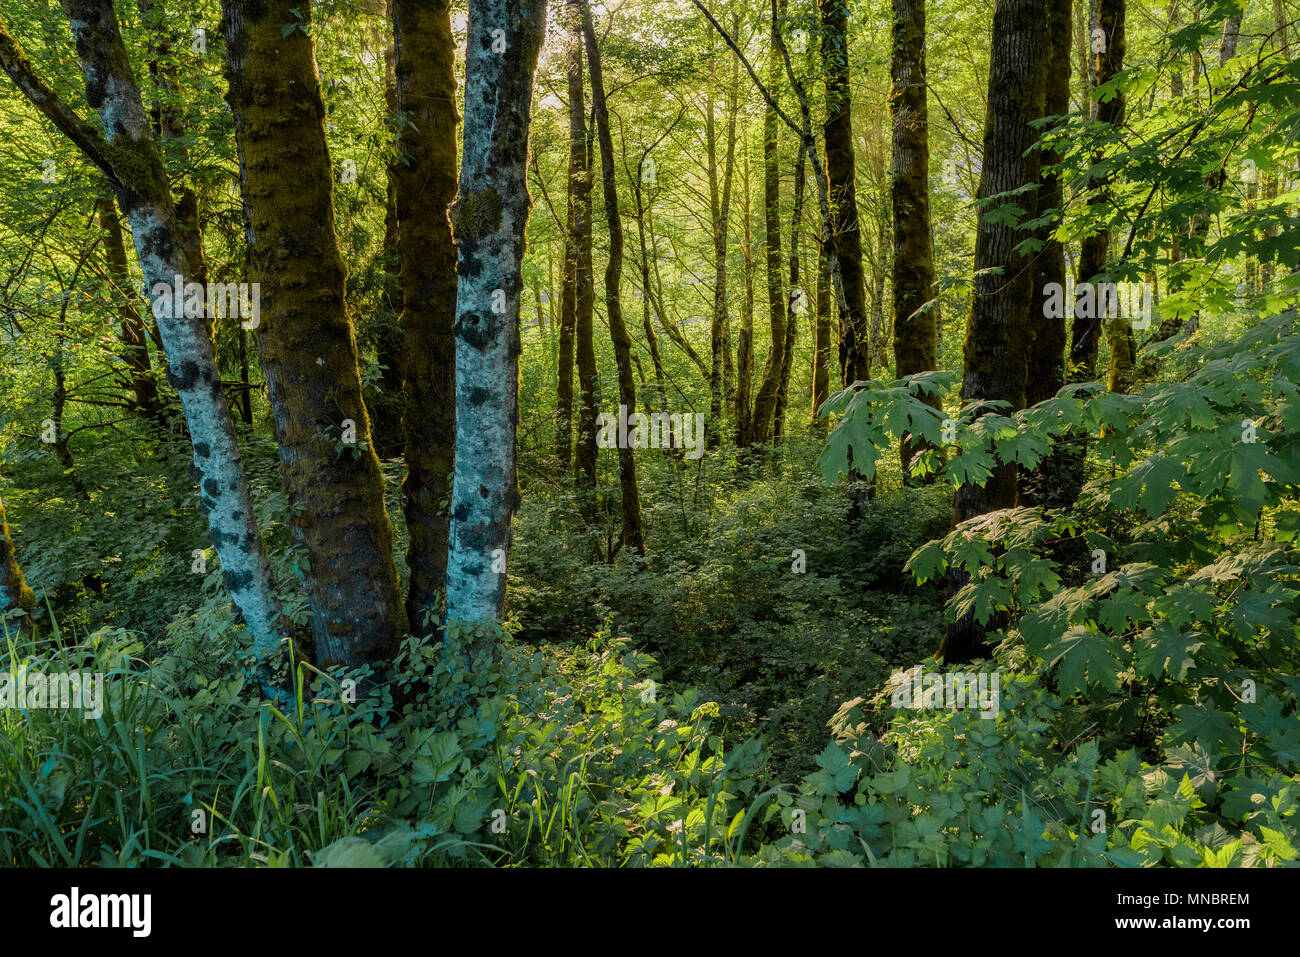 Mixed riparian forest habitat, Squamish Estuary, Squamish, British Columbia, Canada. Stock Photo